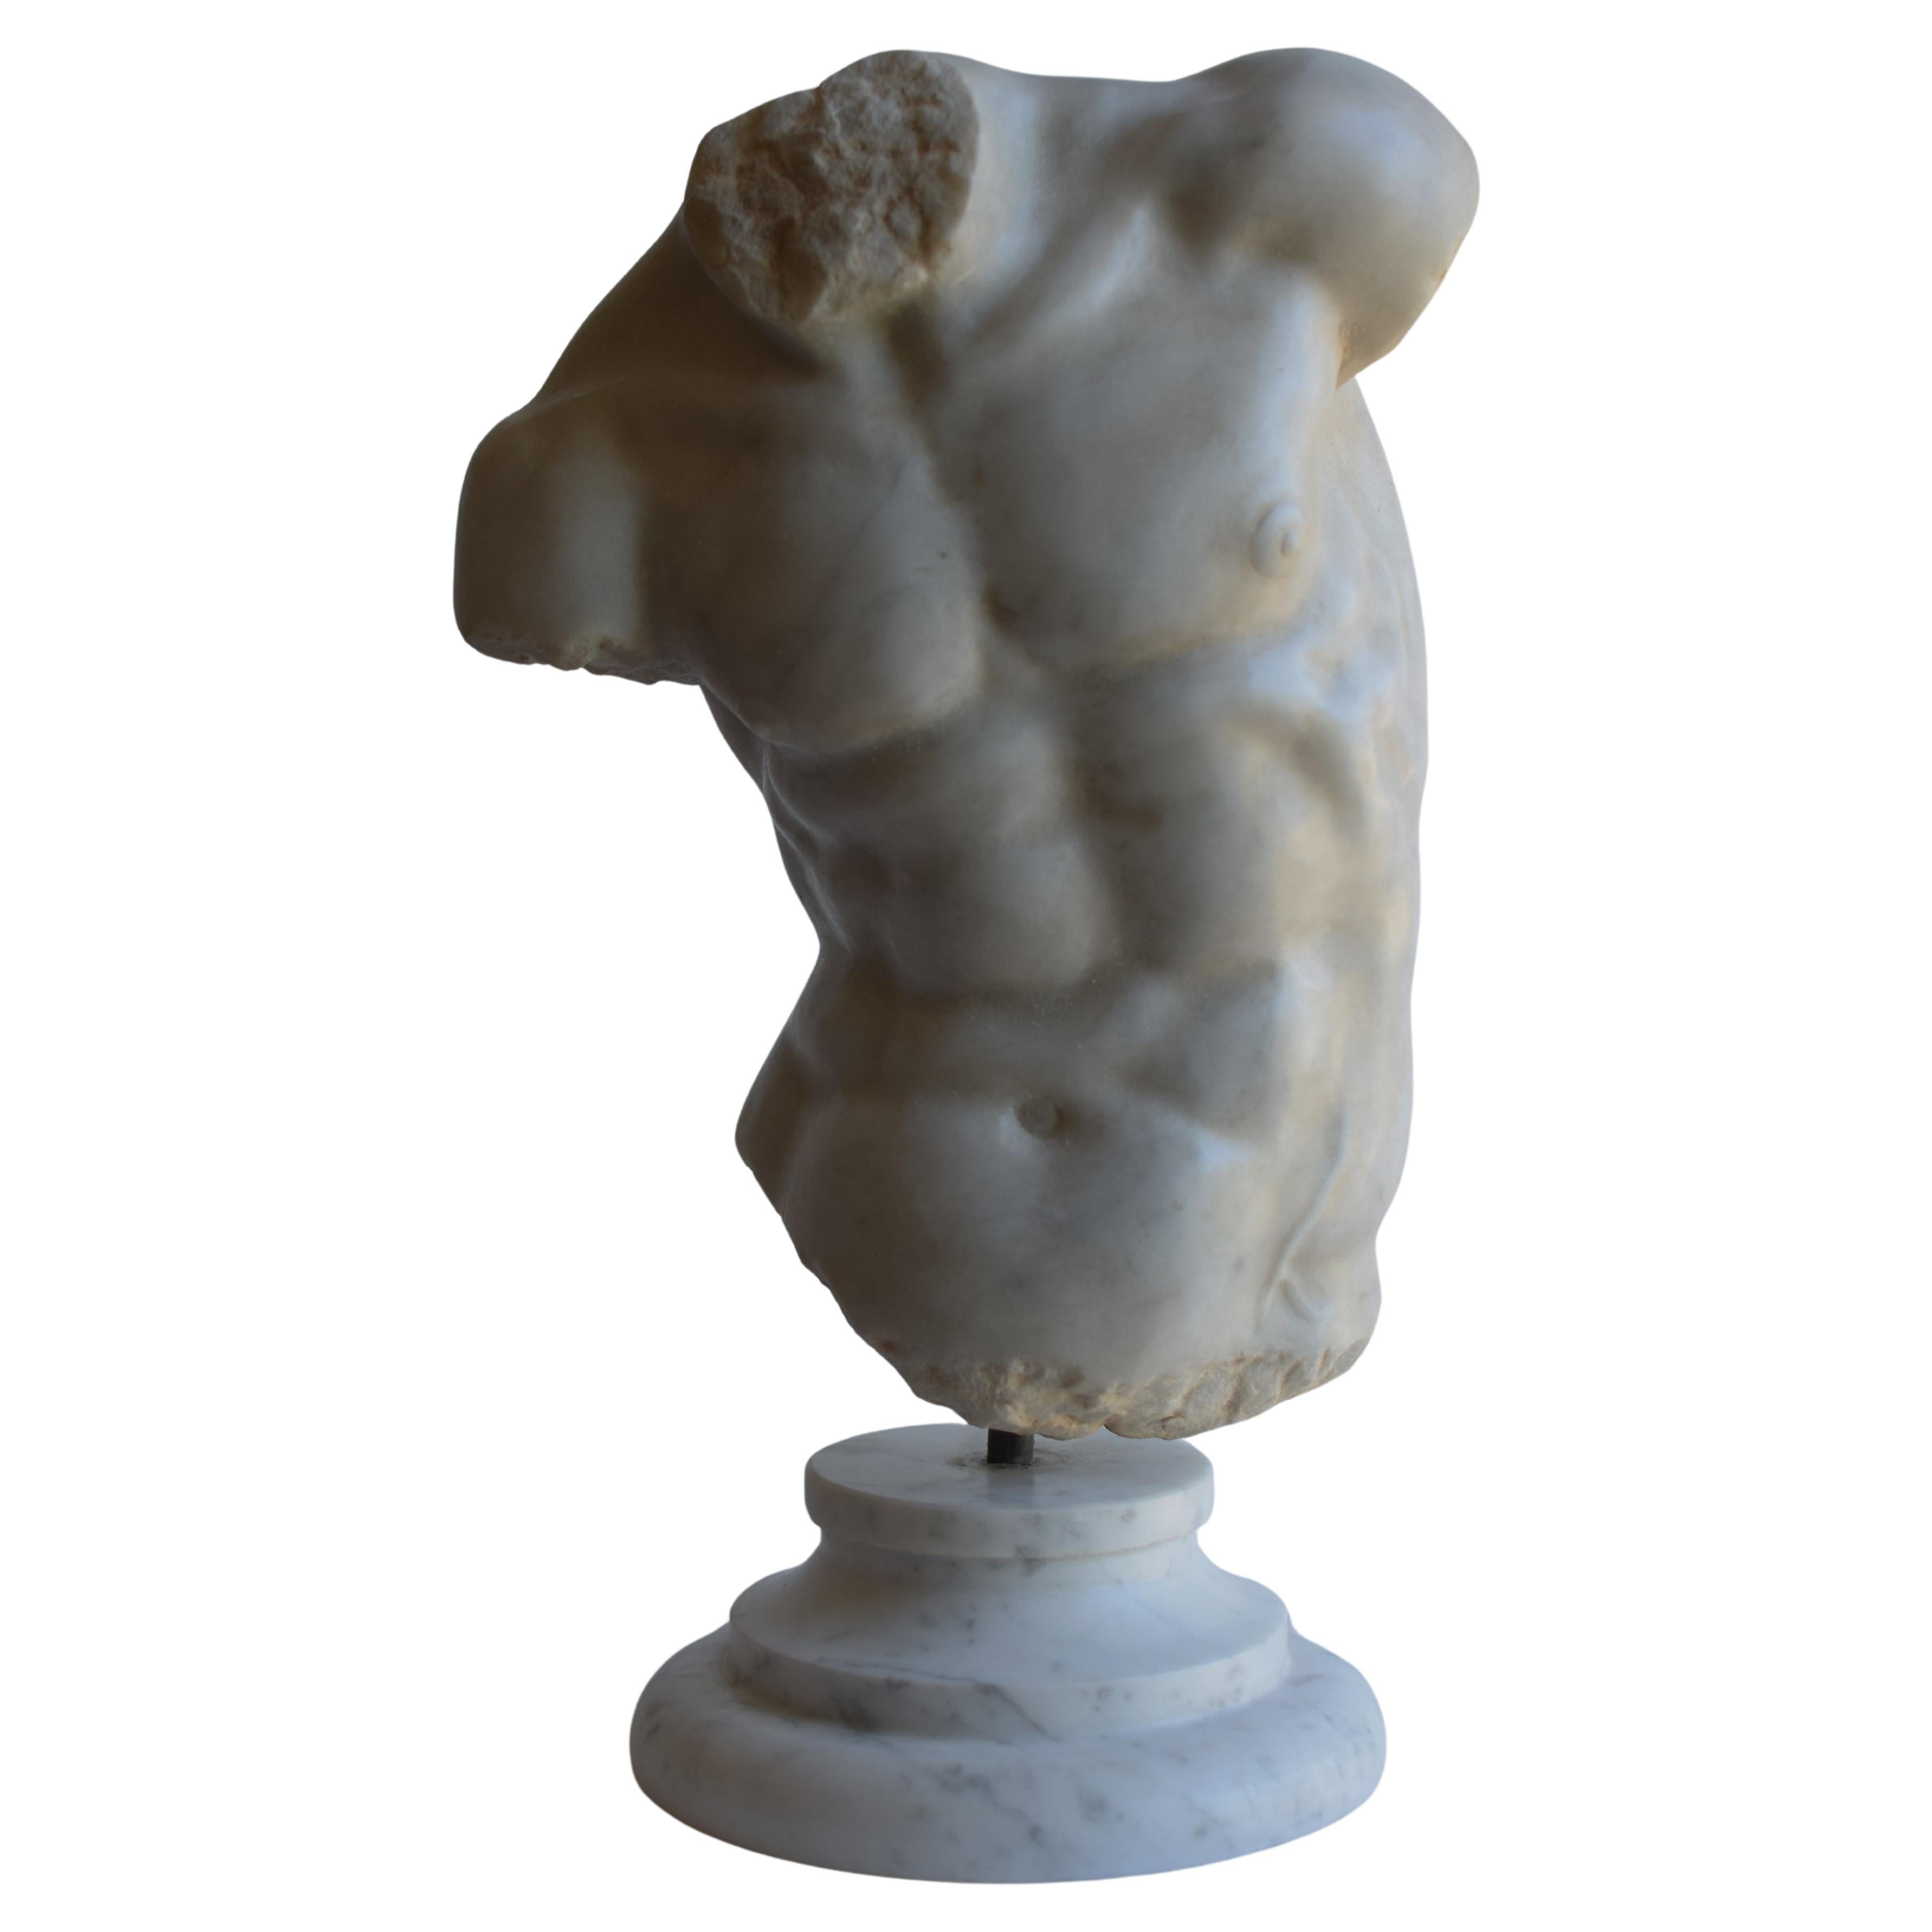 Male torso - "Gaddi torso" carved on white Carrara marble